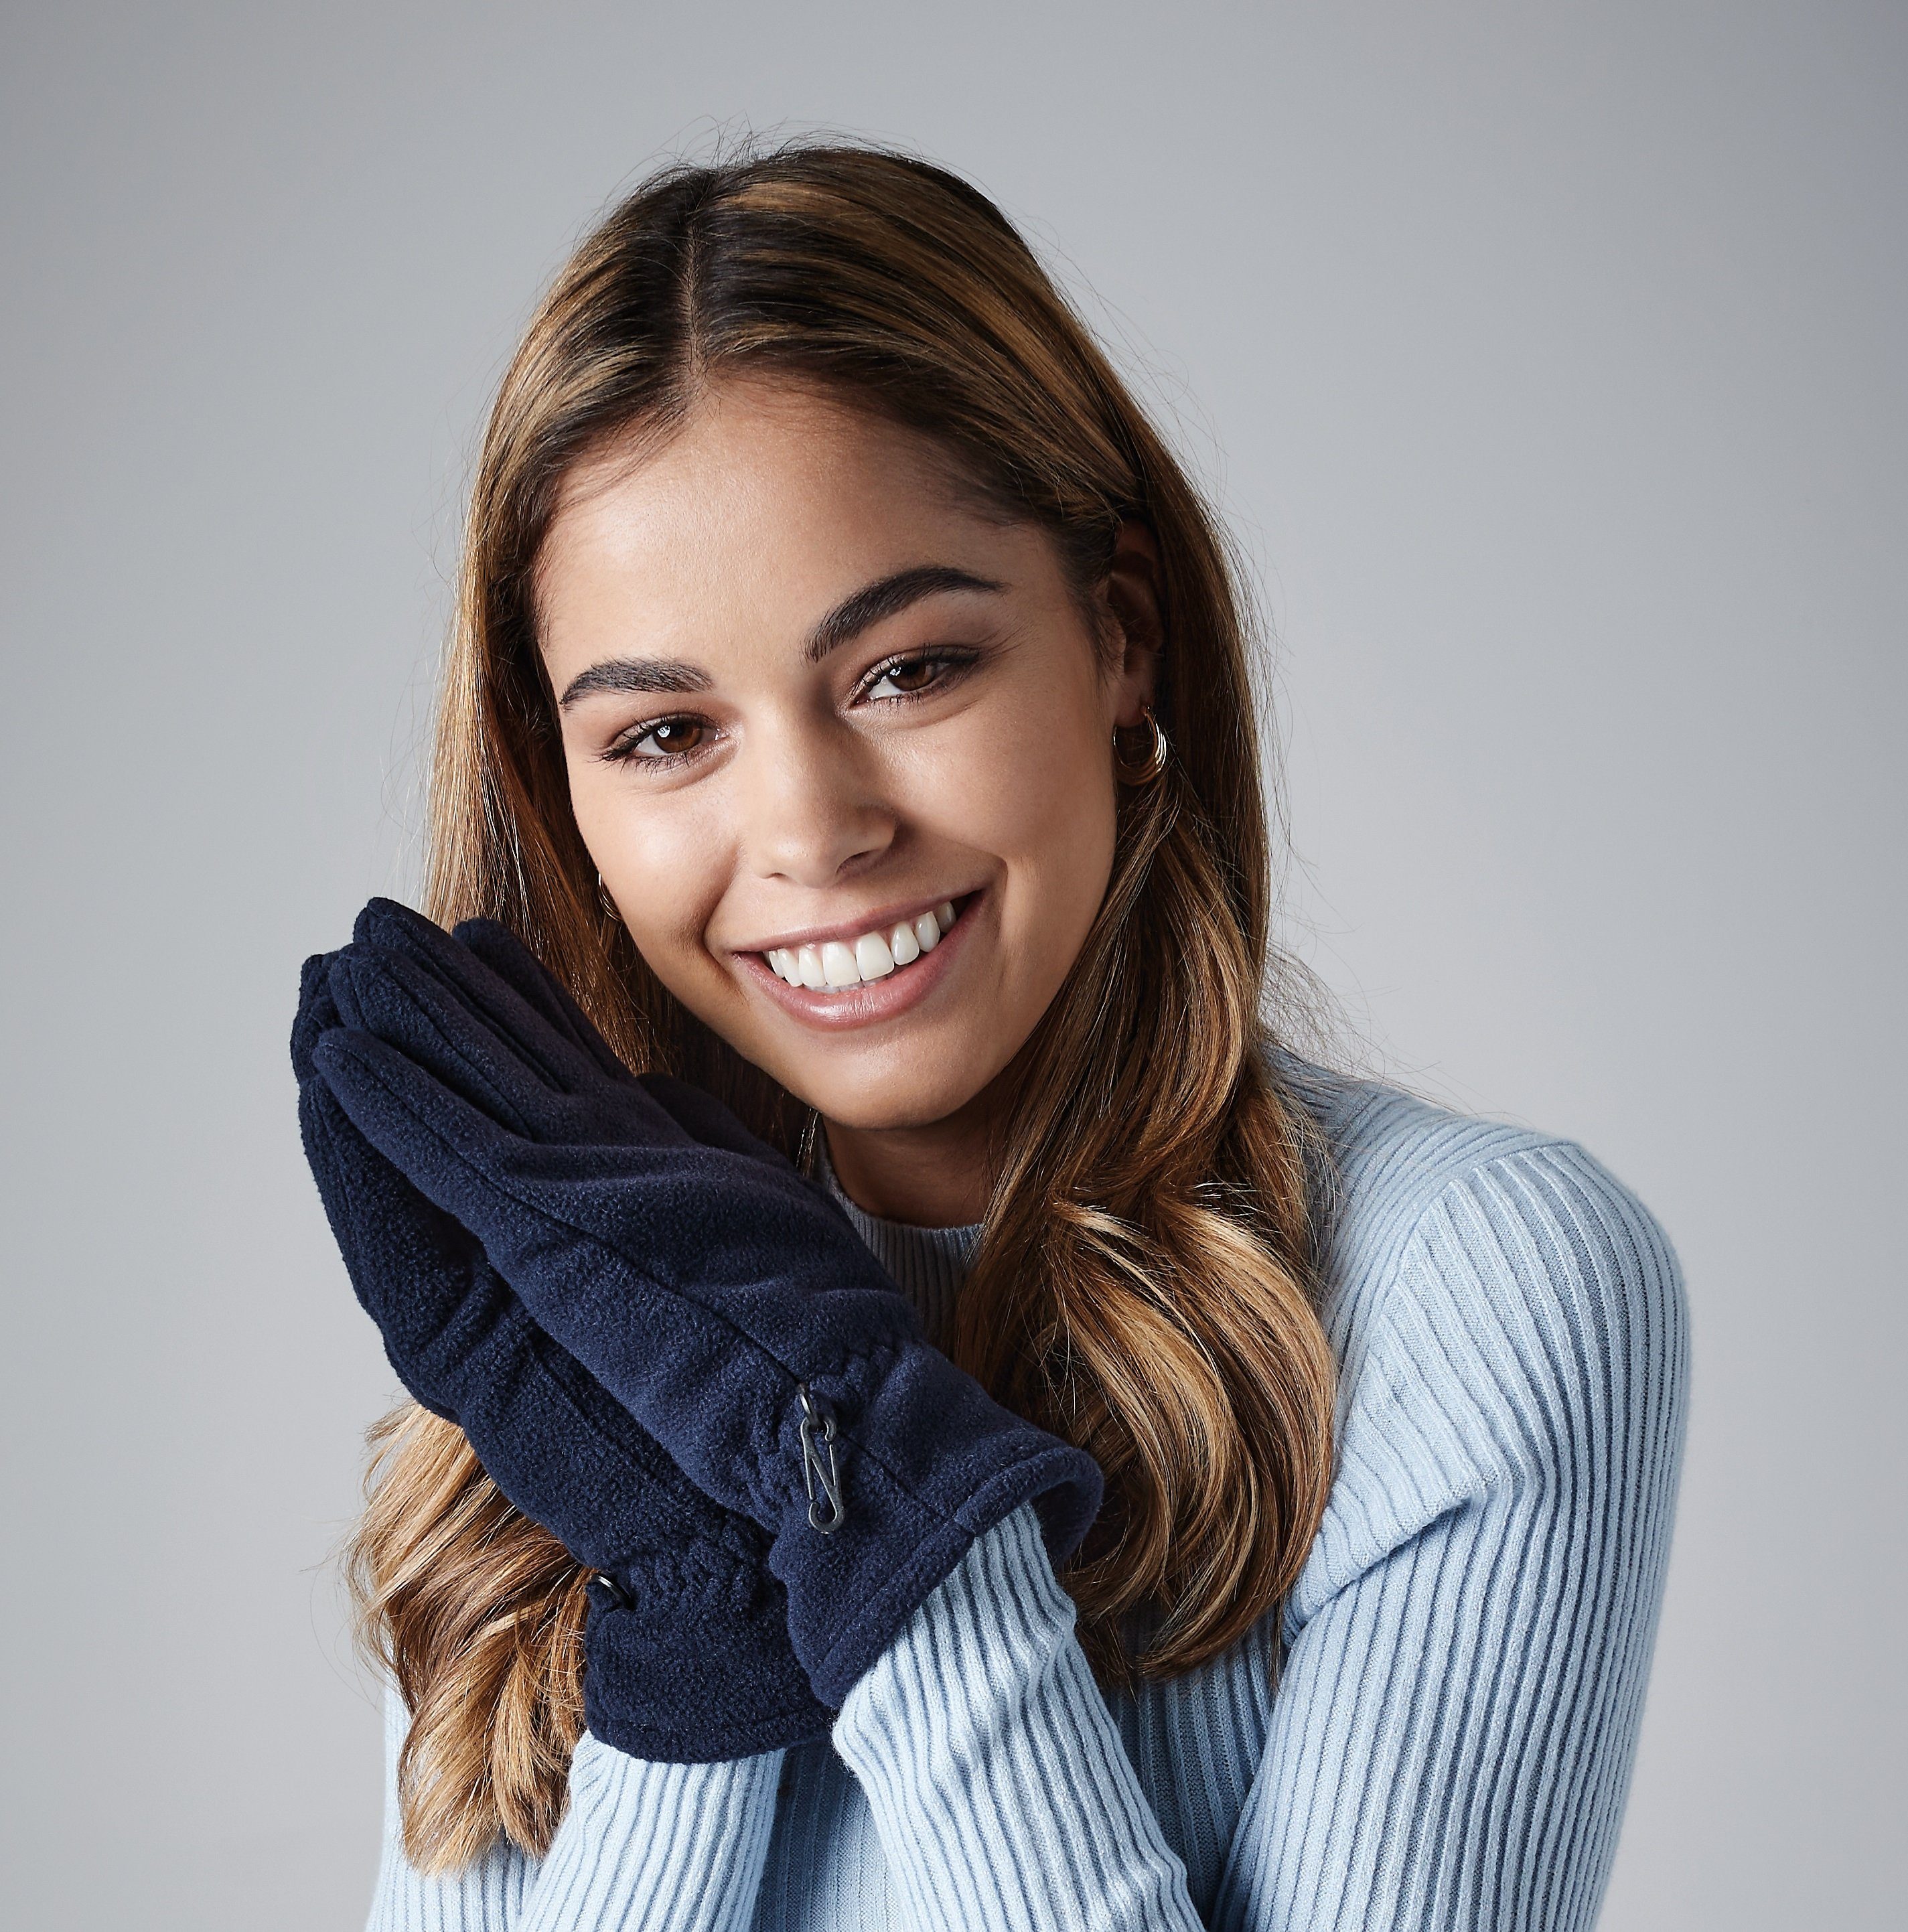 Frauen Ultra-Thermostoff Damen Handschuhe / Beechfield® Dunkelblau Fleece Fleecehandschuhe für Thinsulate Winterhandschuhe